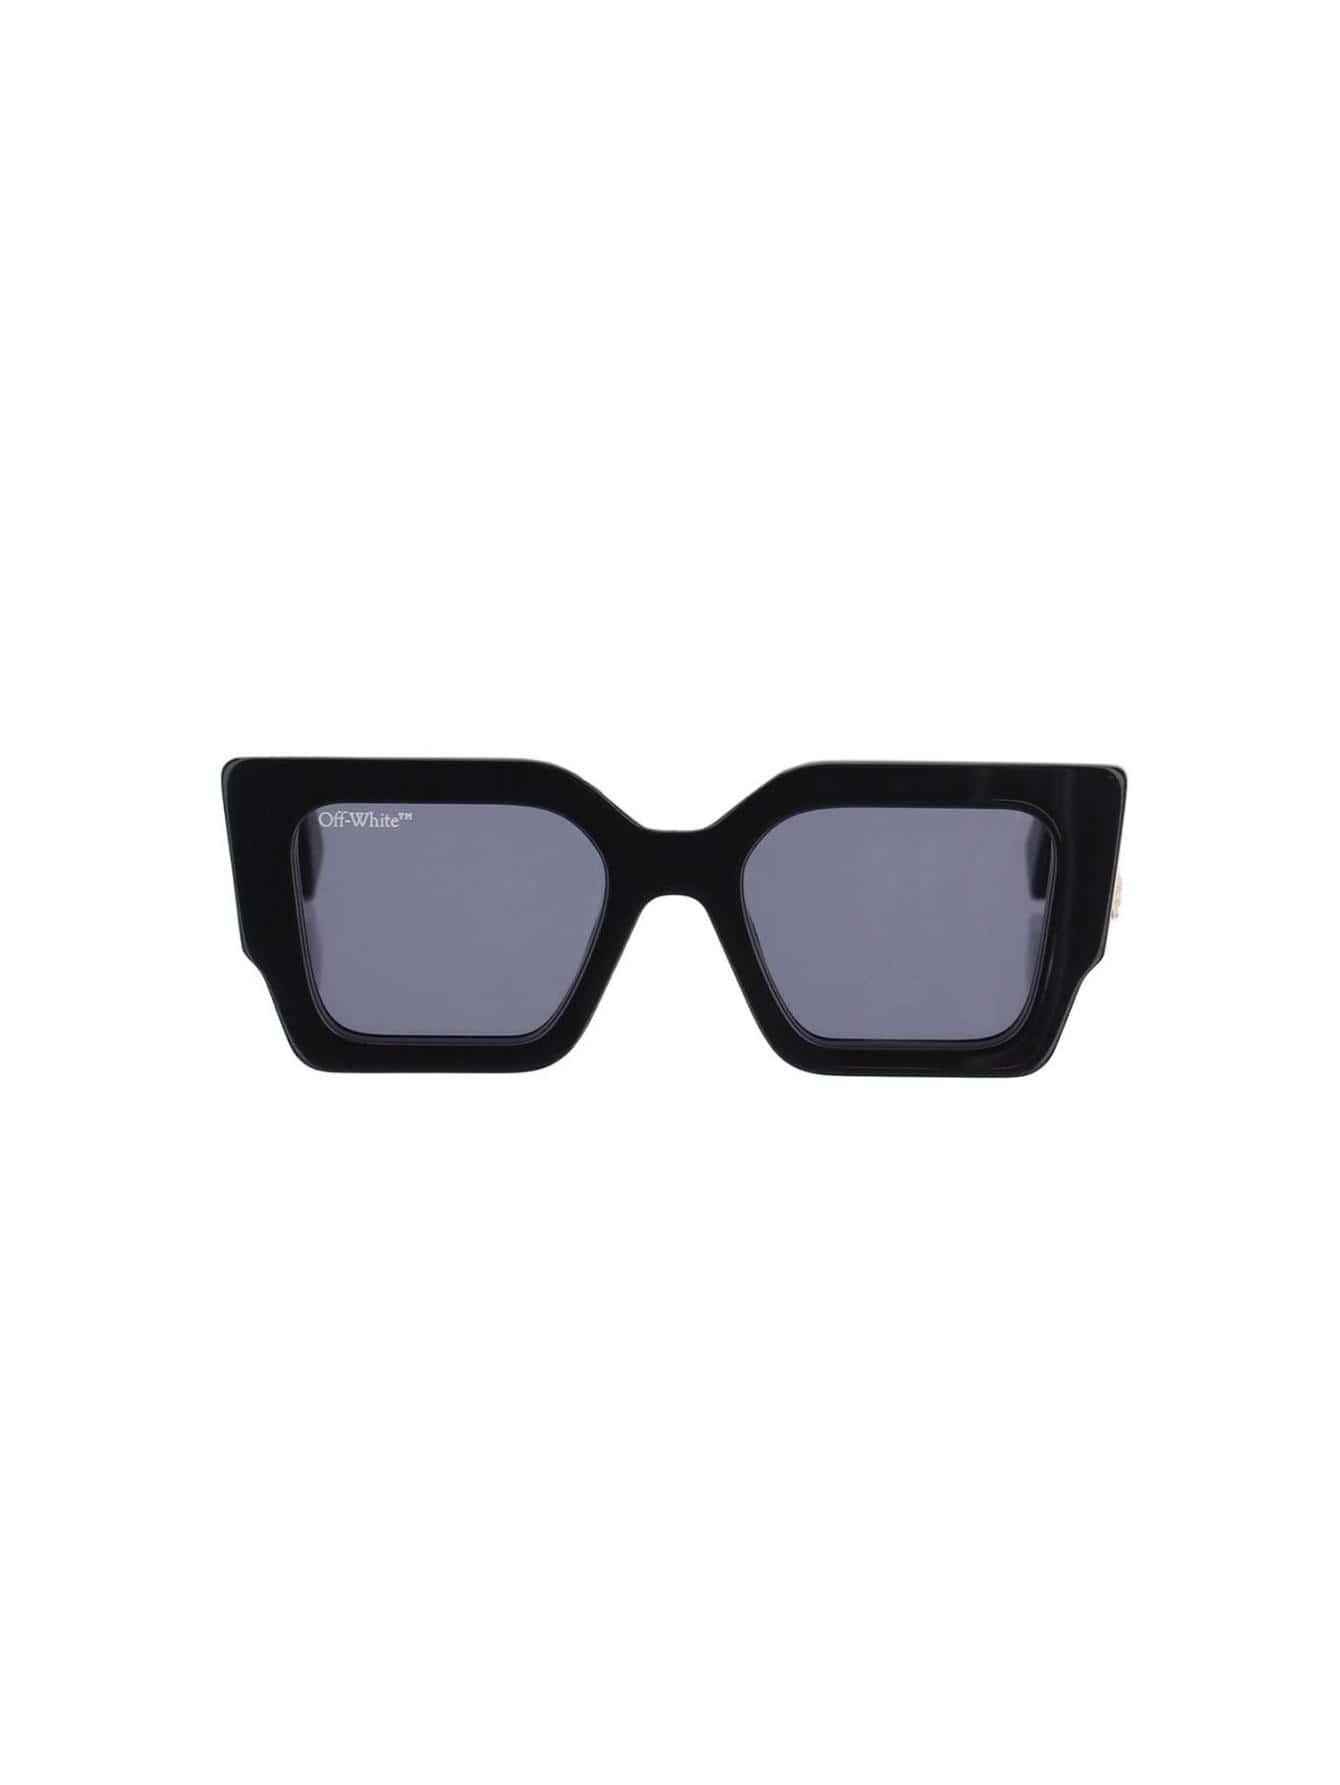 женские солнцезащитные очки off white черные oeri003c99pla0011007 черный Женские солнцезащитные очки Off-White ЧЕРНЫЕ OERI003C99PLA0011007, черный